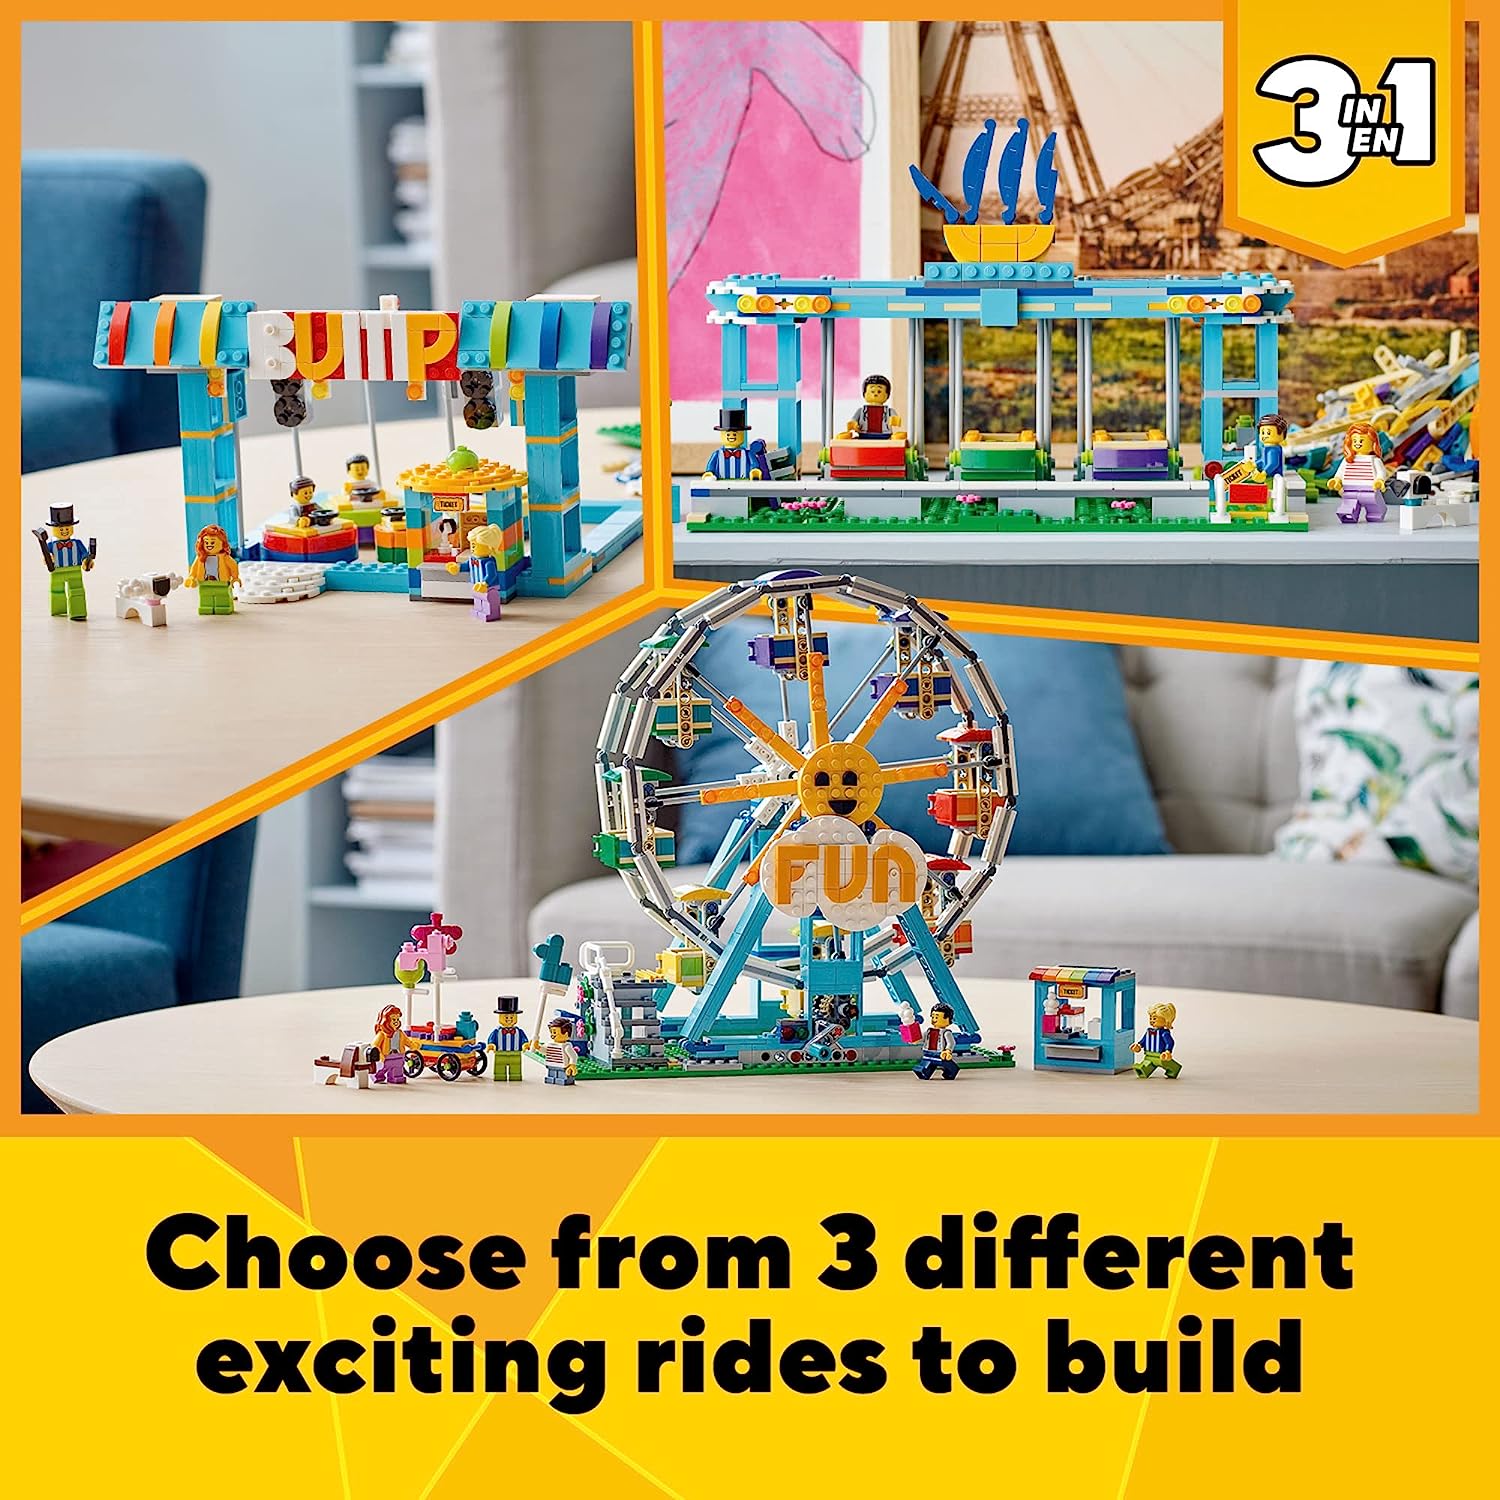 レゴ クリエイター 【送料無料】LEGO Creator 3in1 Ferris Wheel 31119 Building Kit with Rebuildable Toy Bumper Cars, Boat Swing and 5 Minifigures; New 2021 (1,002 Pieces)レゴ クリエイター